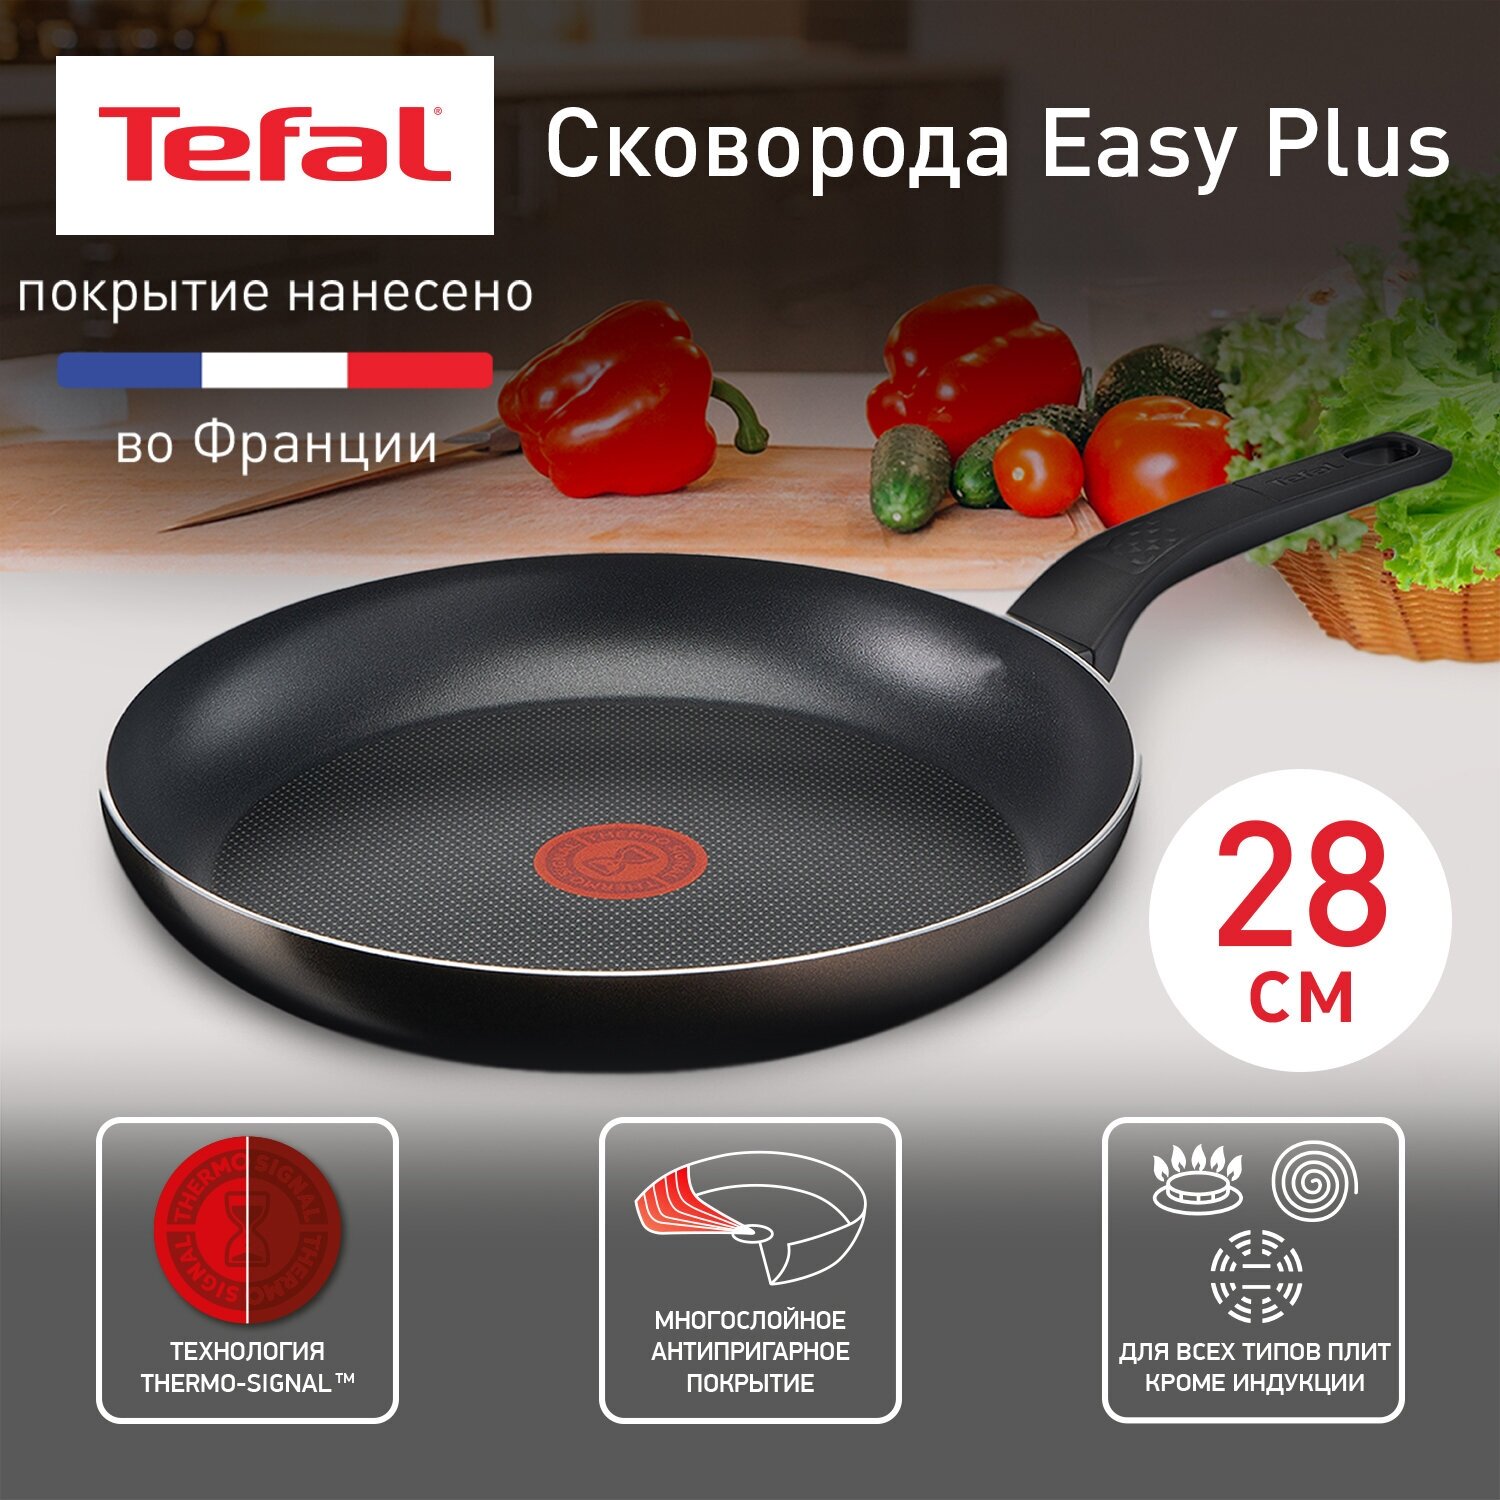 Сковорода TEFAL Easy Plus 28 см 04206128